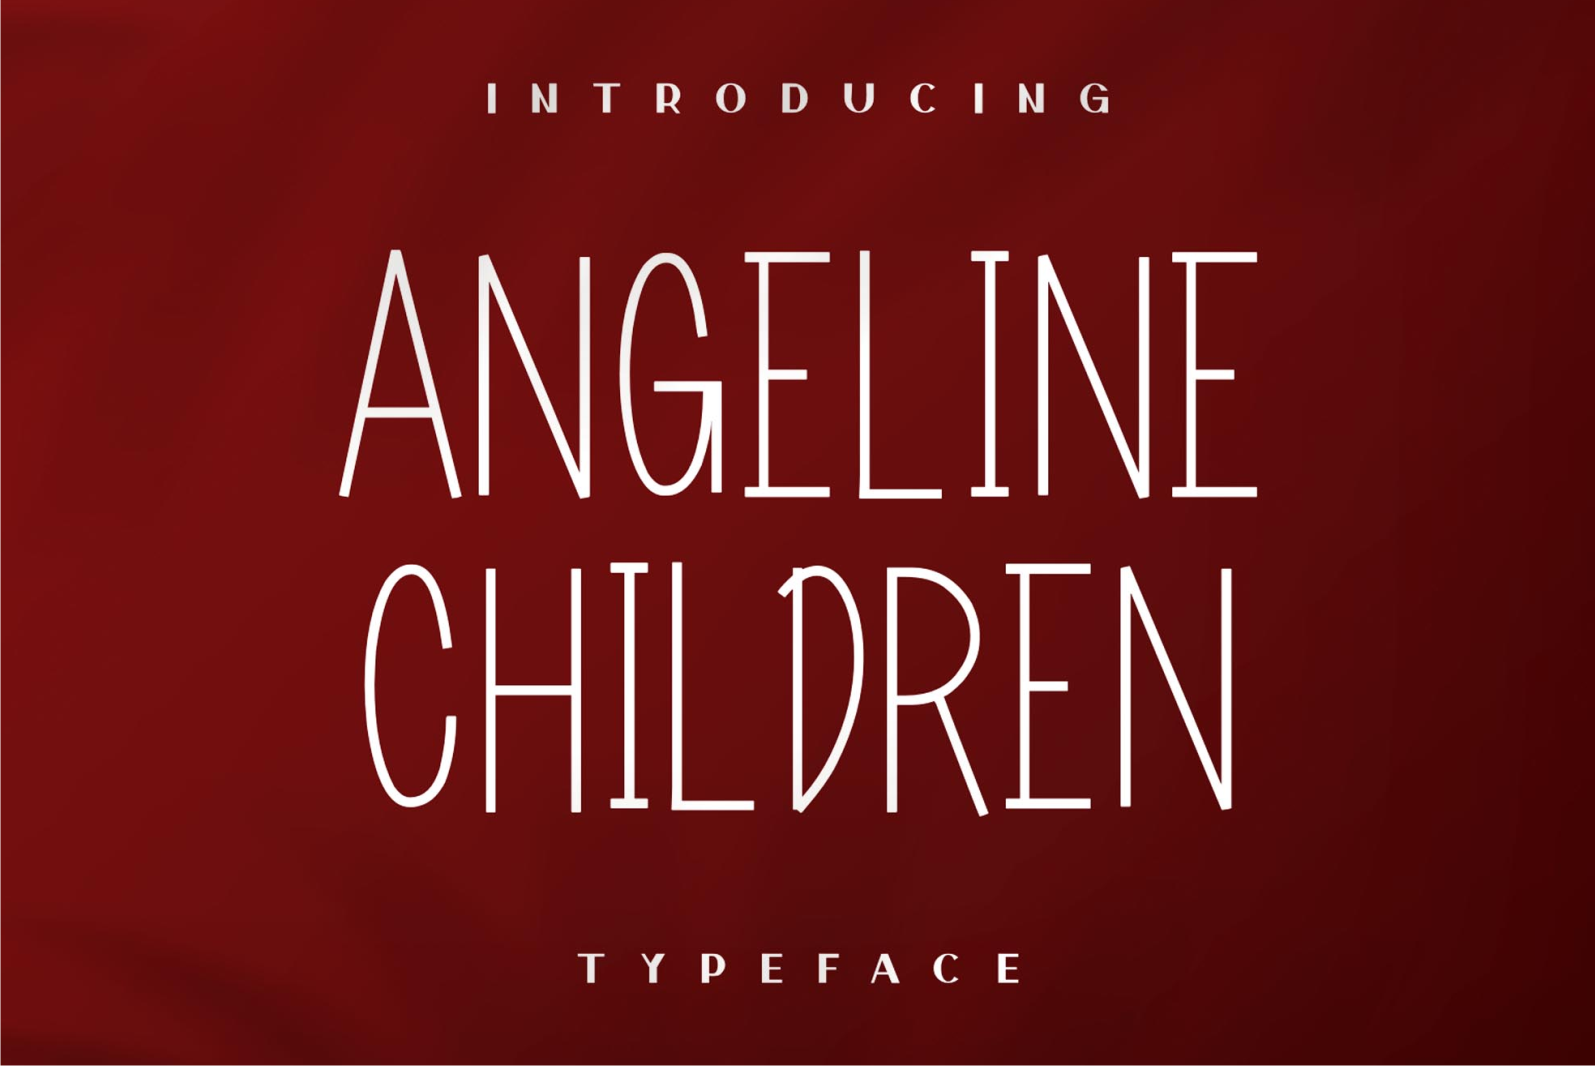 angeline children